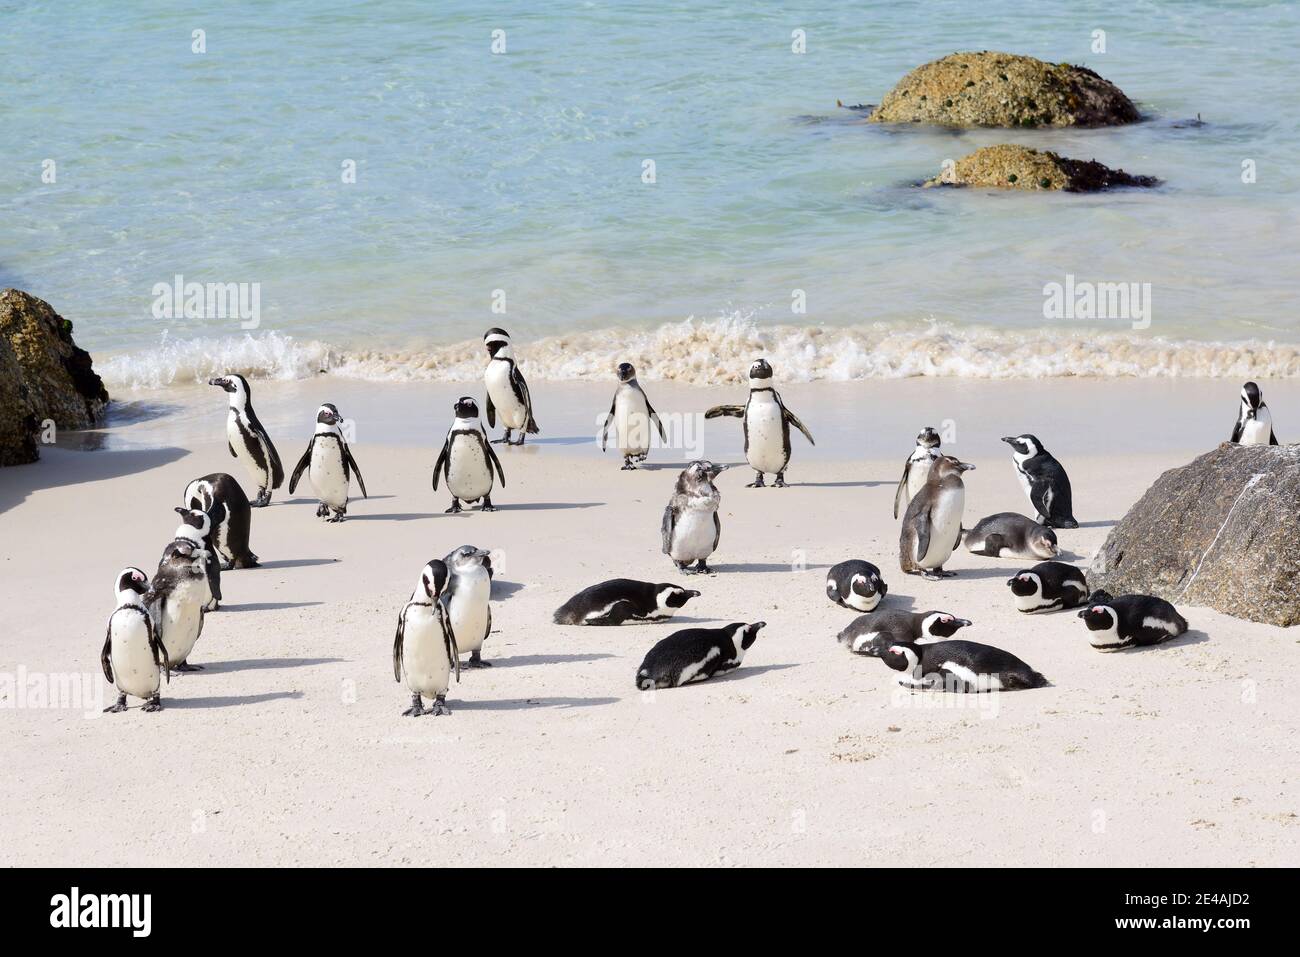 Colonie de pingouins africains (Spheniscus demersus) sur la plage, Boulders Beach ou Boulders Bay, Simons Town, Afrique du Sud, Océan Indien Banque D'Images